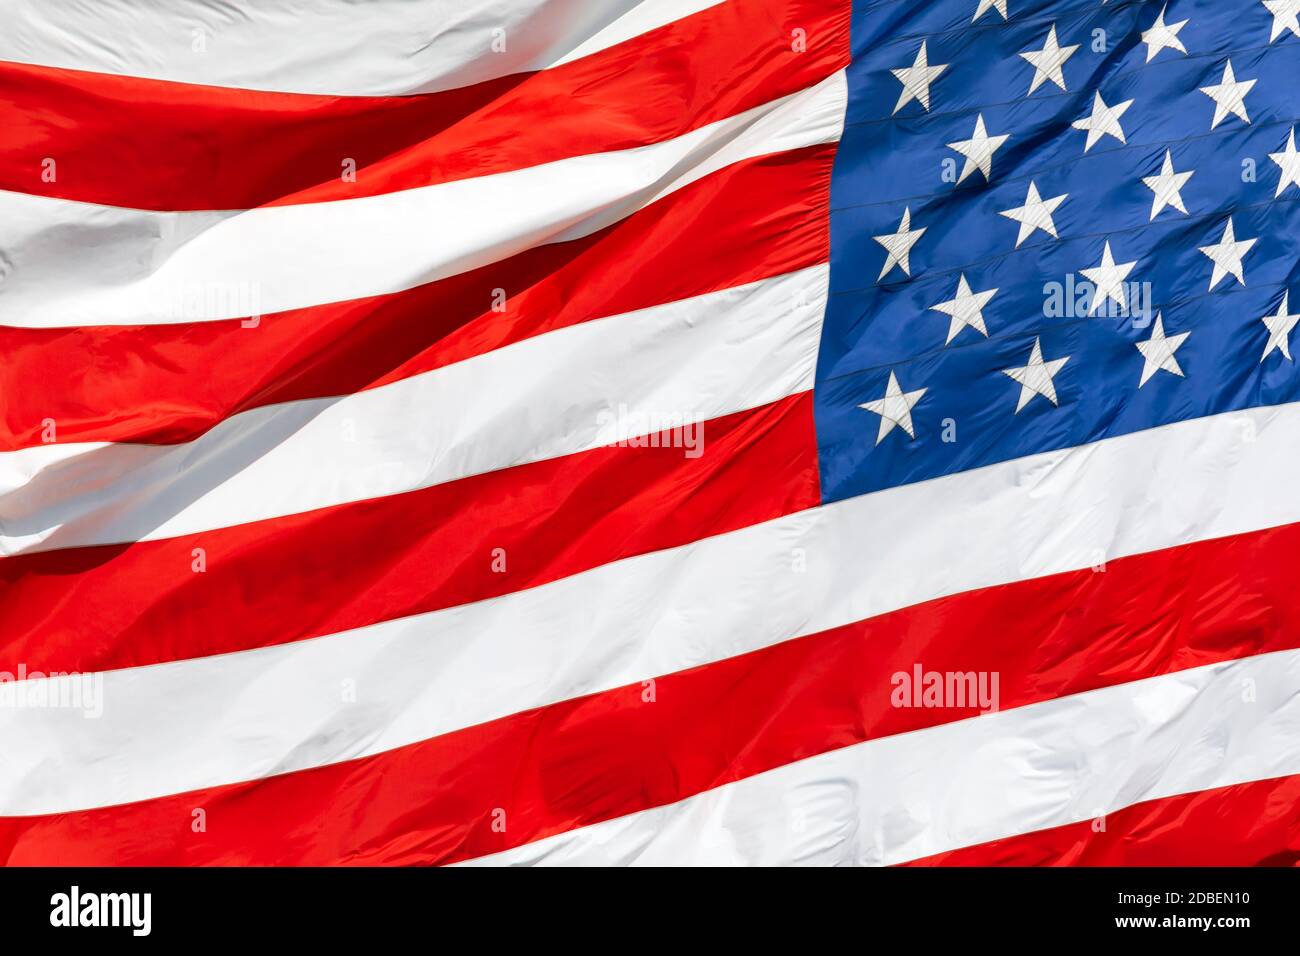 Amerikanische Flagge winkt im Wind, Bewegung der US-Flagge in Nahaufnahme, rote weiße blaue Flagge im Freien bei Sonnenlicht. Nationalflagge der Vereinigten Staaten von Amerika. USA Stars und Stripes Stockfoto